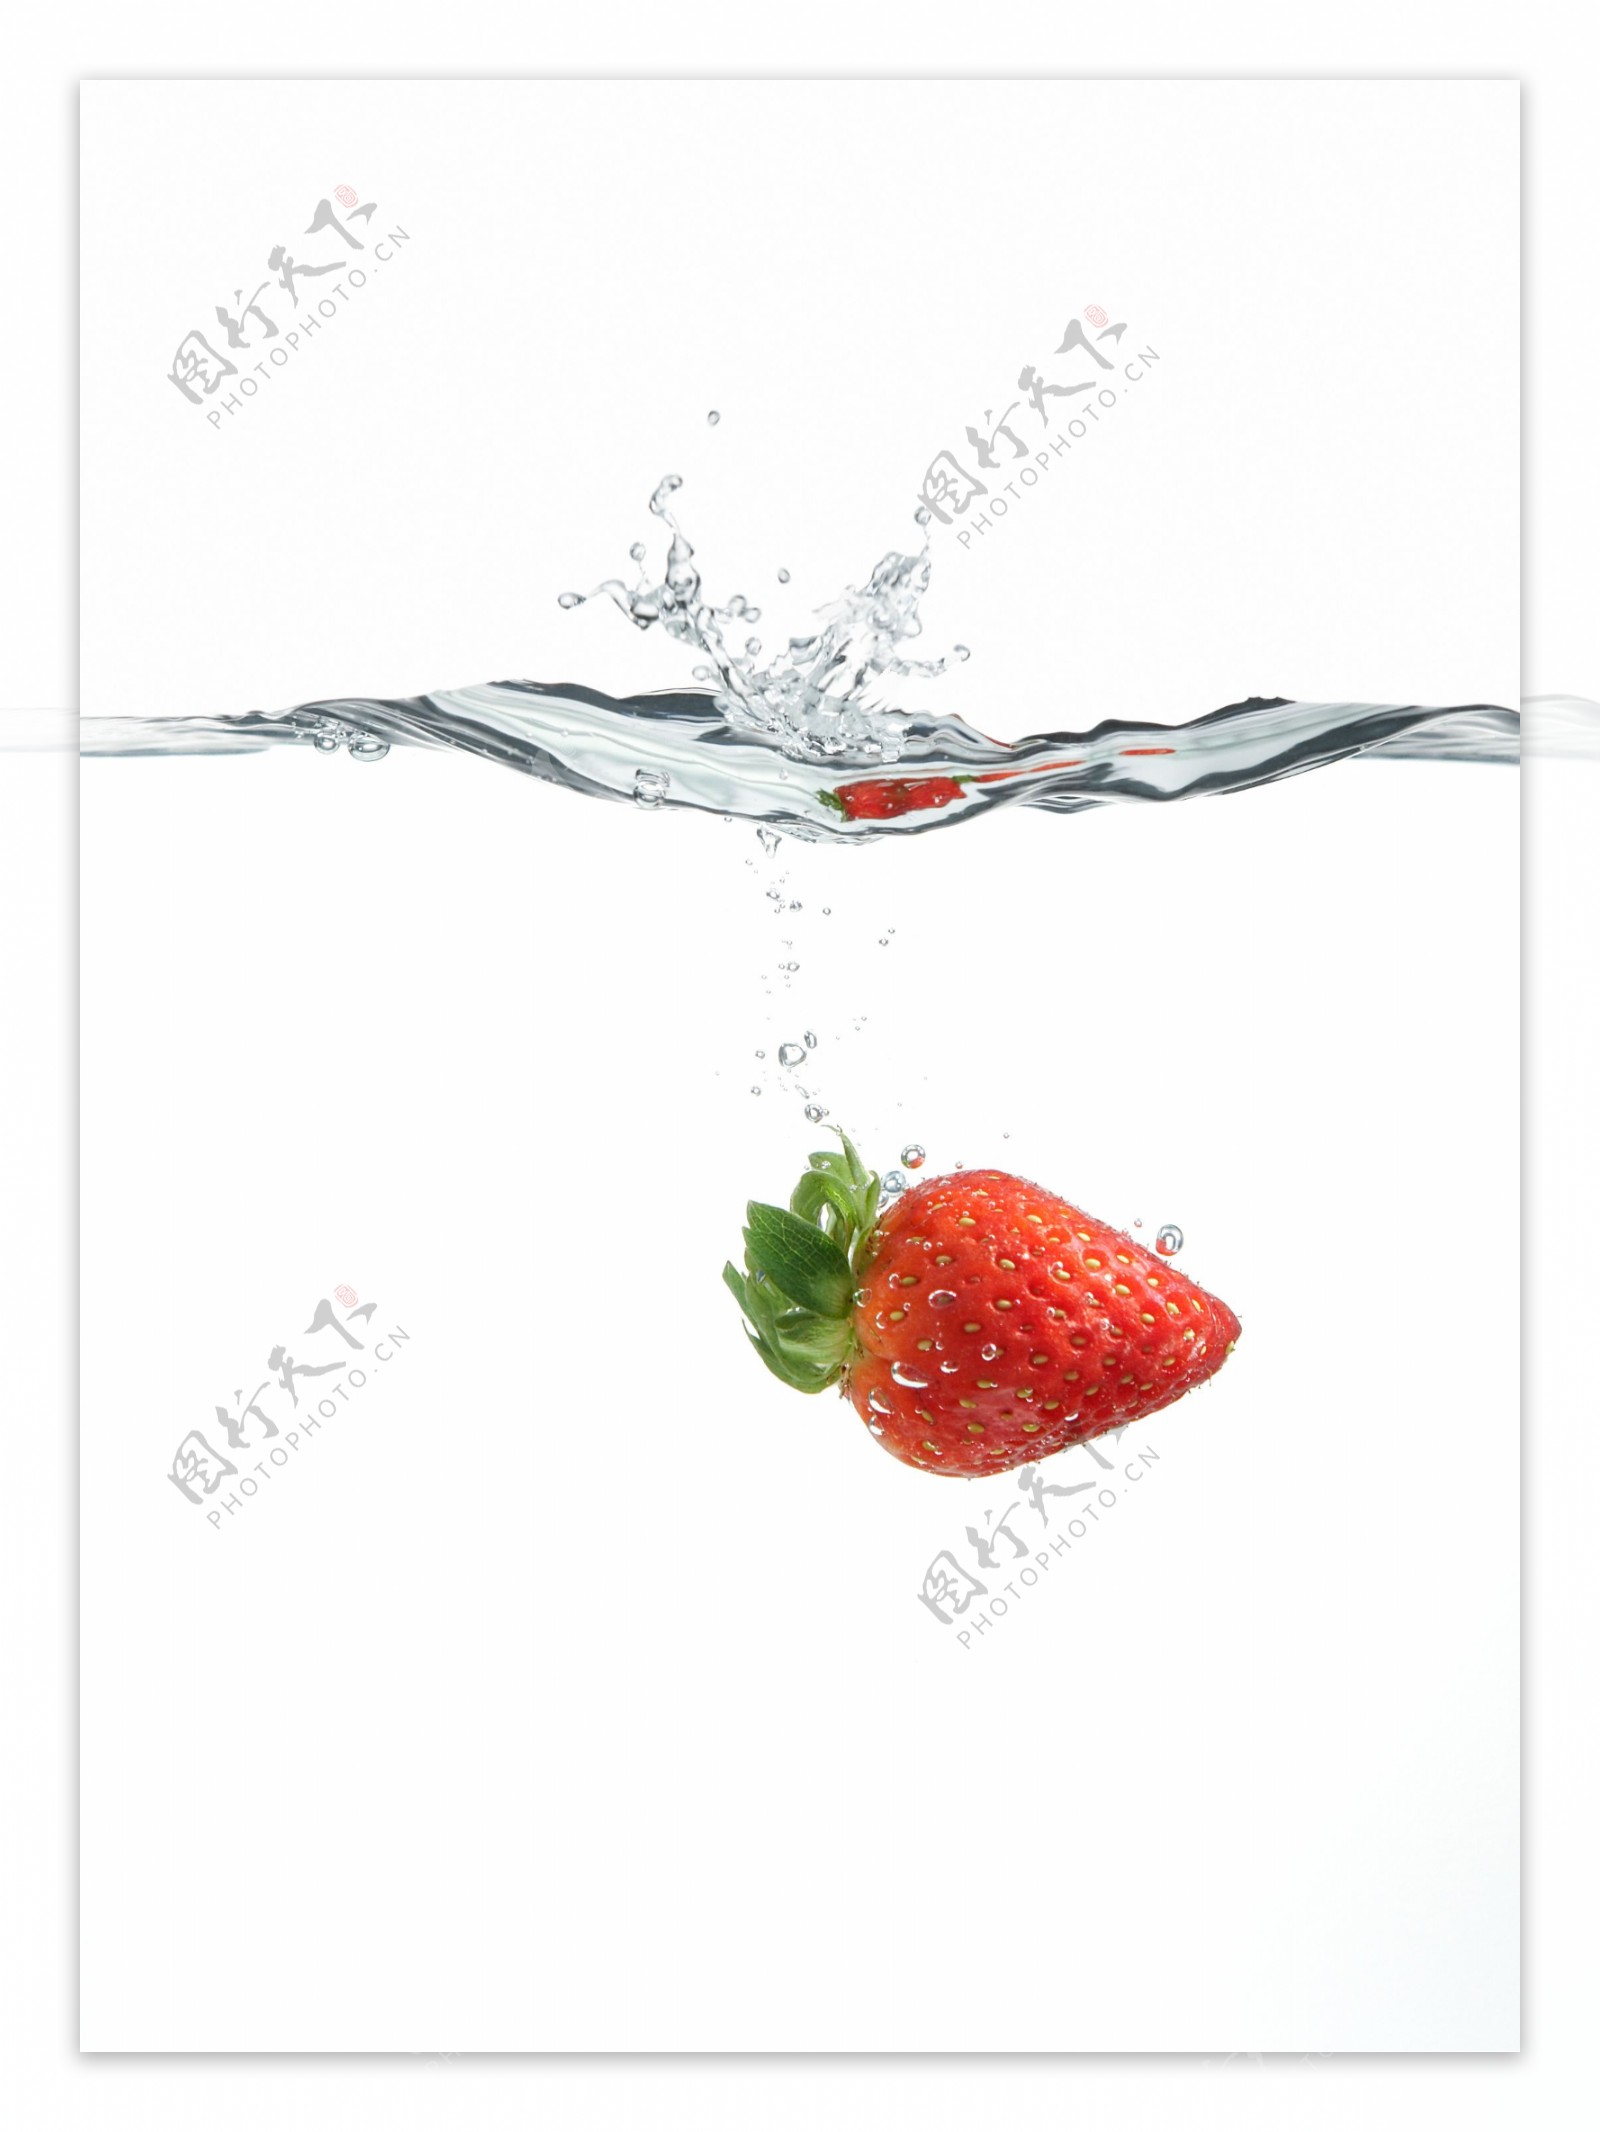 落入水中的草莓图片